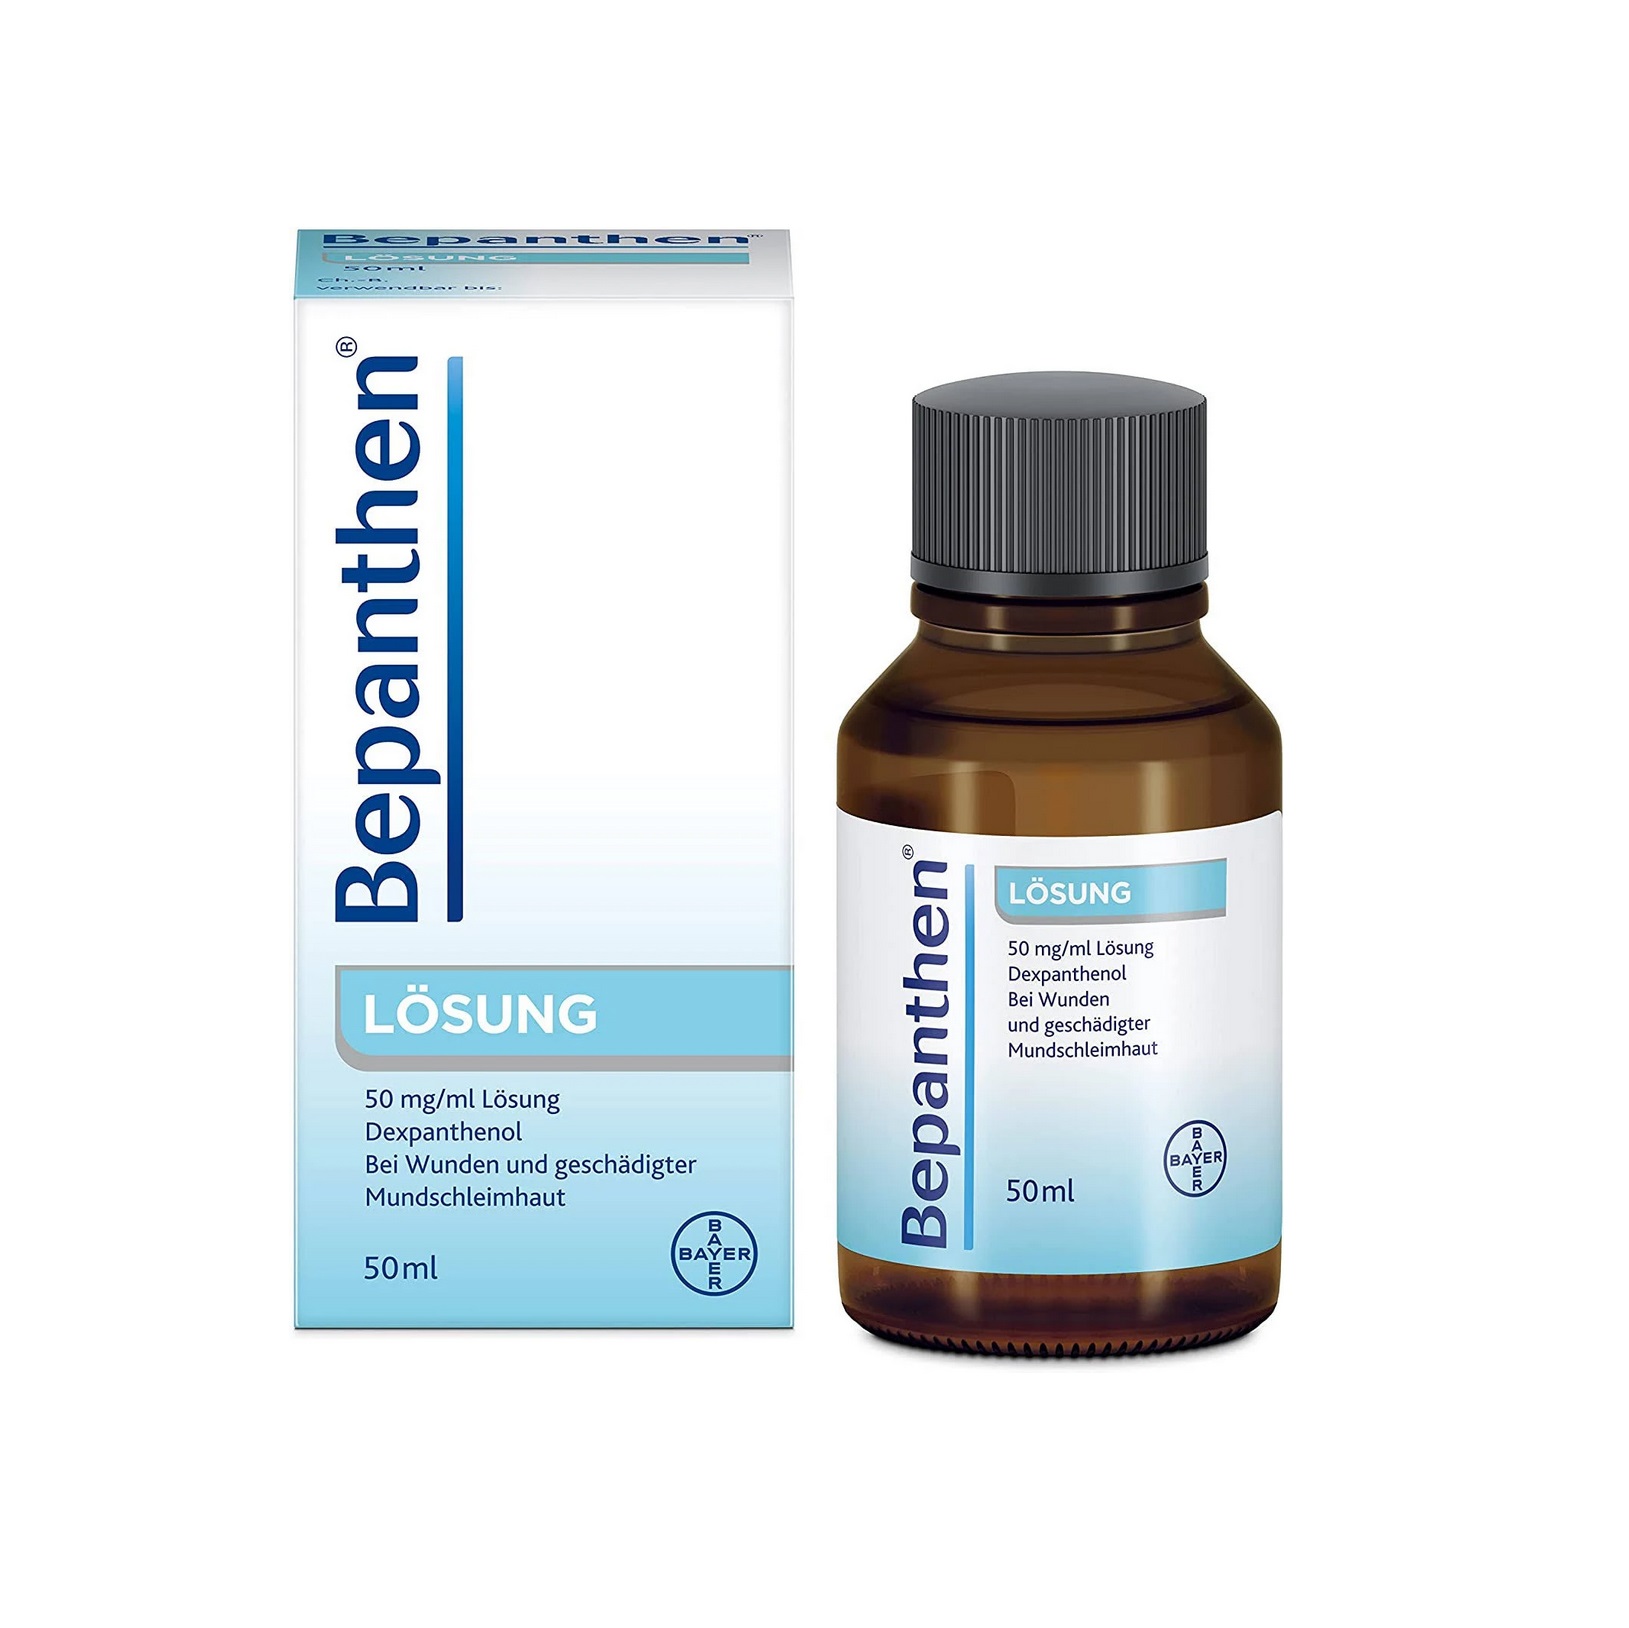 Buy Bepanthen Liquid 50ml online in the US pharmacy.